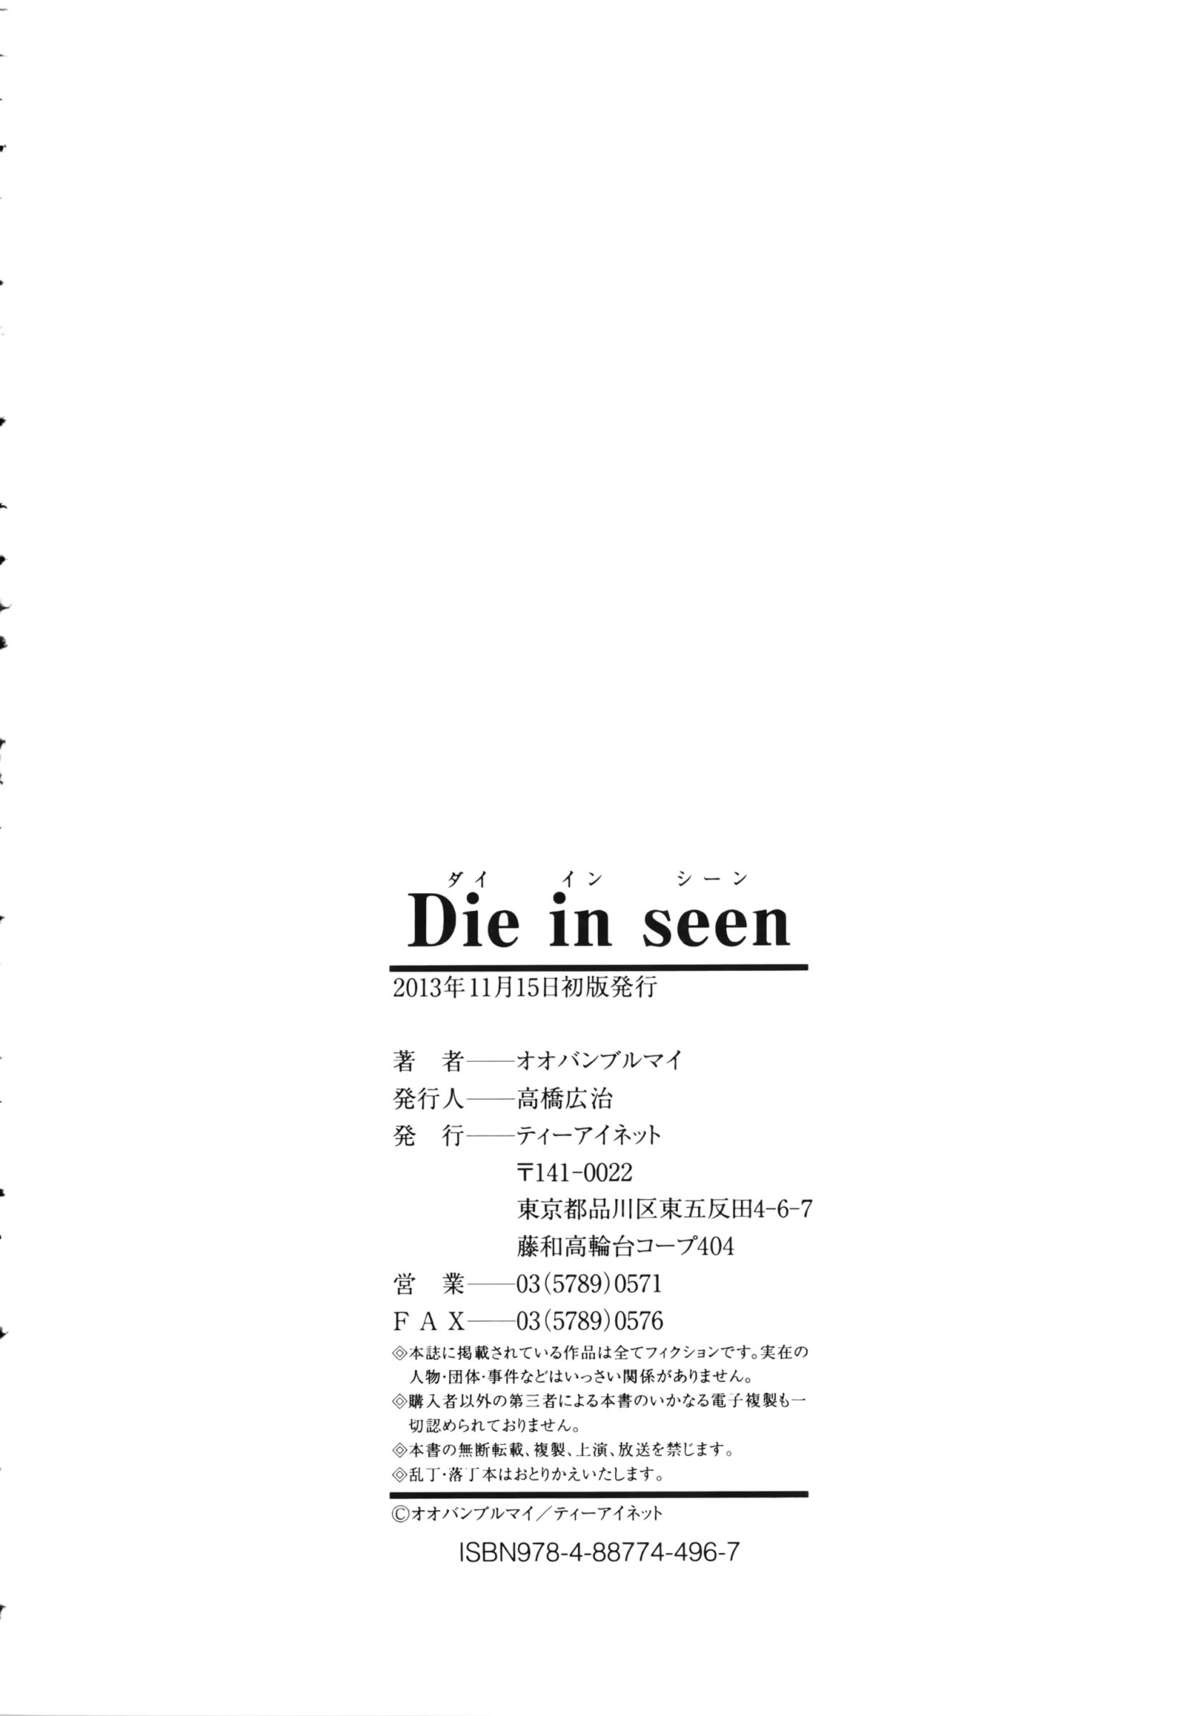 [オオバンブルマイ] Die in seen + ラフイラスト集・ページ, 複製原画 [中国翻訳]